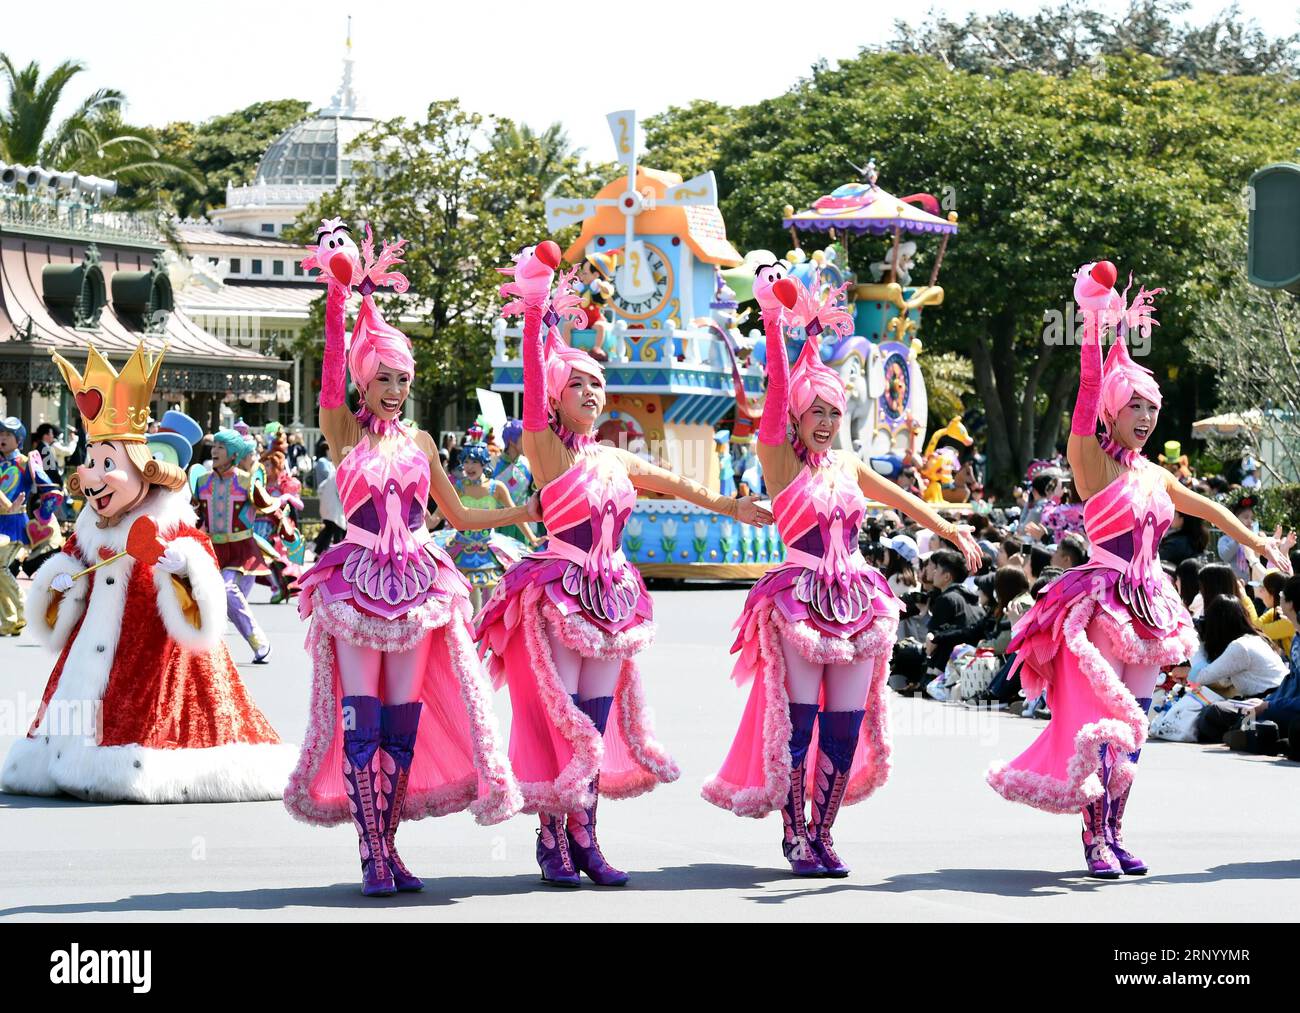 (180410) -- TOKYO, le 10 avril 2018 -- le Tokyo Disneyland organise une répétition pour la célébration du 35e anniversaire de son ouverture à Tokyo, Japon, le 10 avril 2018. Le Tokyo Disneyland a été ouvert le 15 avril 1983. ) (Ybg) JAPON-TOKYO DISNEY-35E ANNIVERSAIRE-RÉPÉTITION MaxPing PUBLICATIONxNOTxINxCHN Banque D'Images